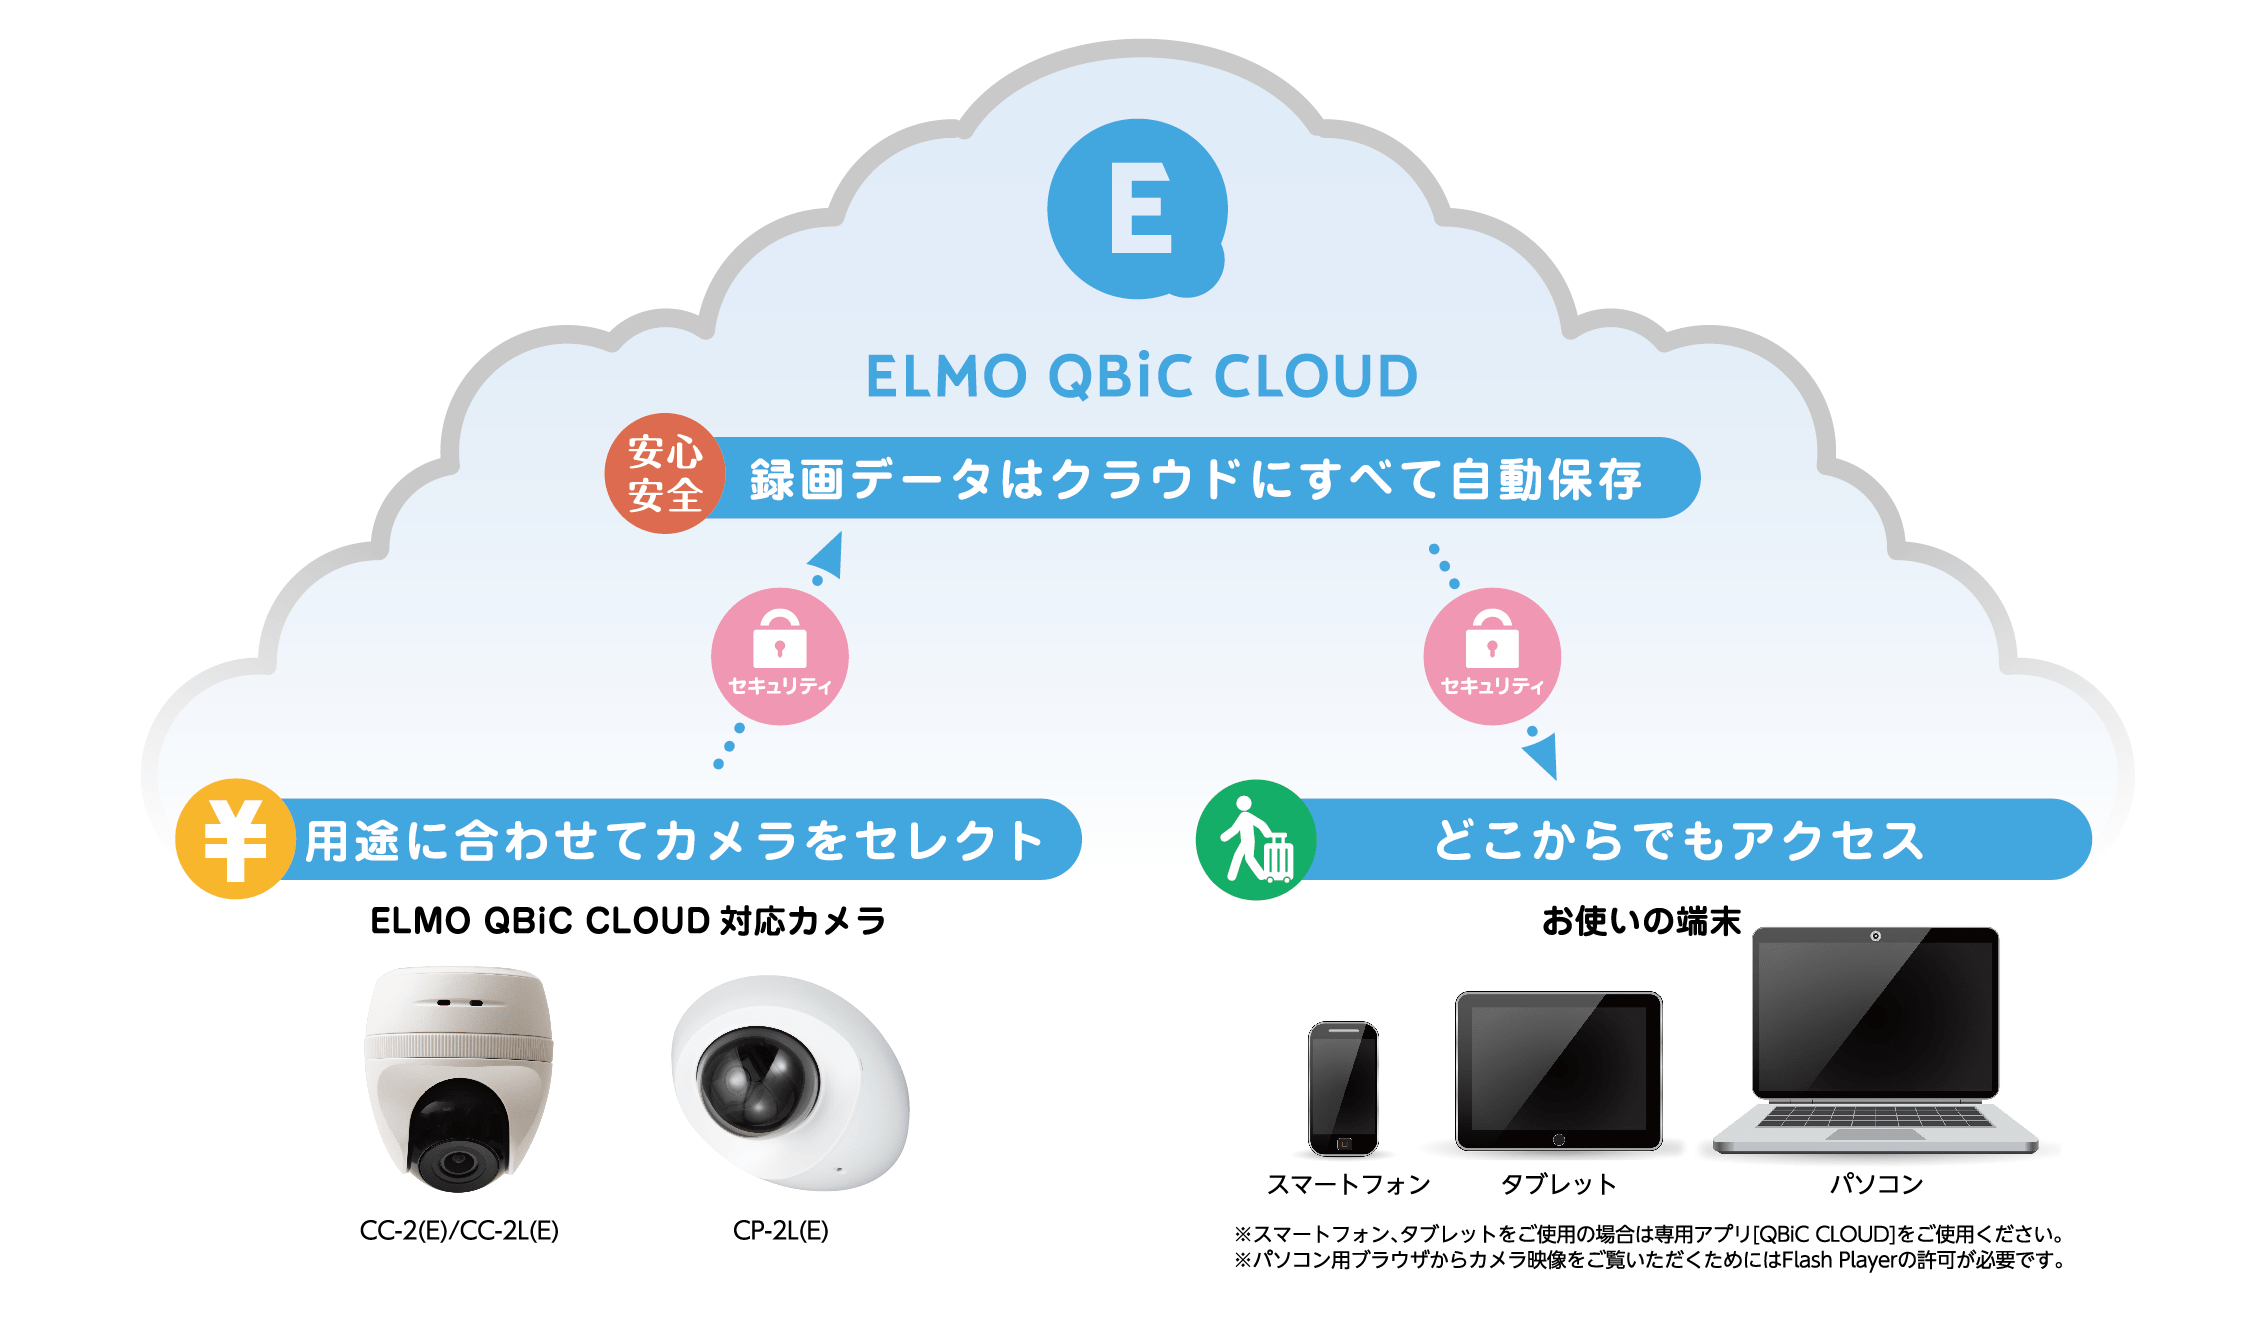 ELMO QBiC CLOUD サービス概念図（拡大）